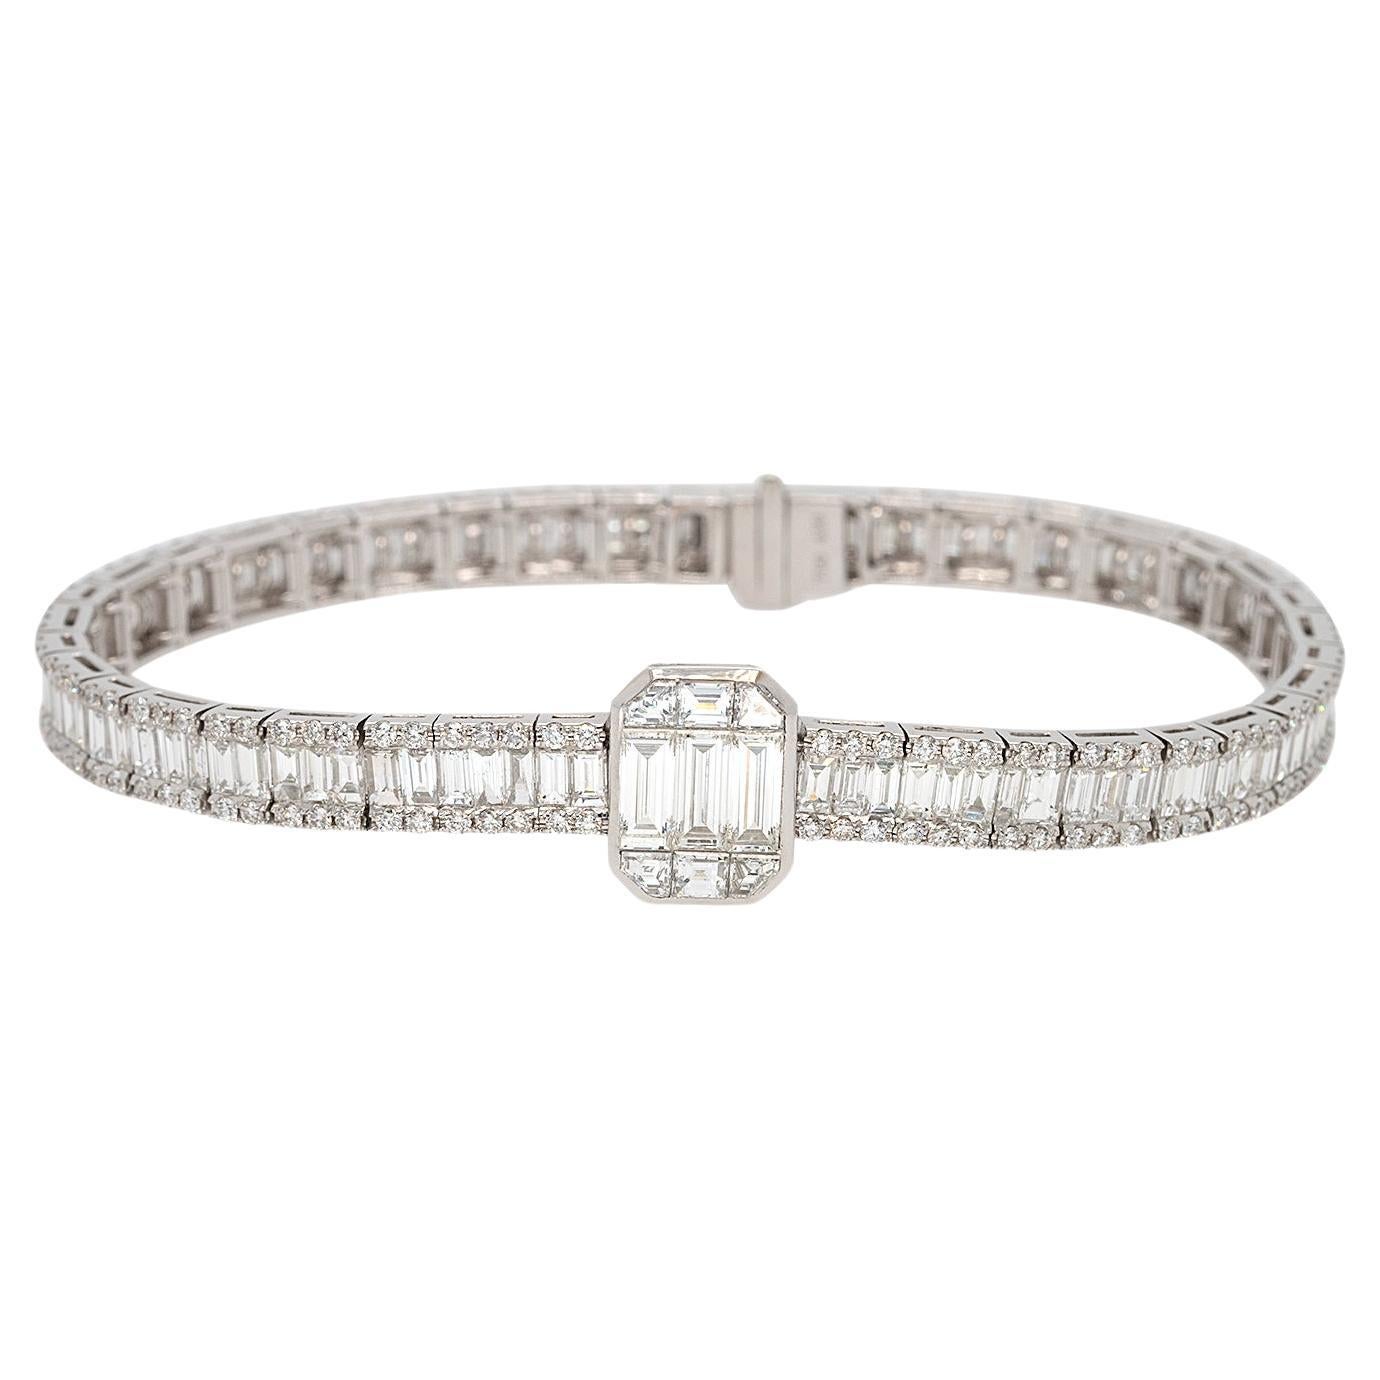 Bracelet en or blanc 18 carats avec diamants naturels taille baguette de 7,15 carats